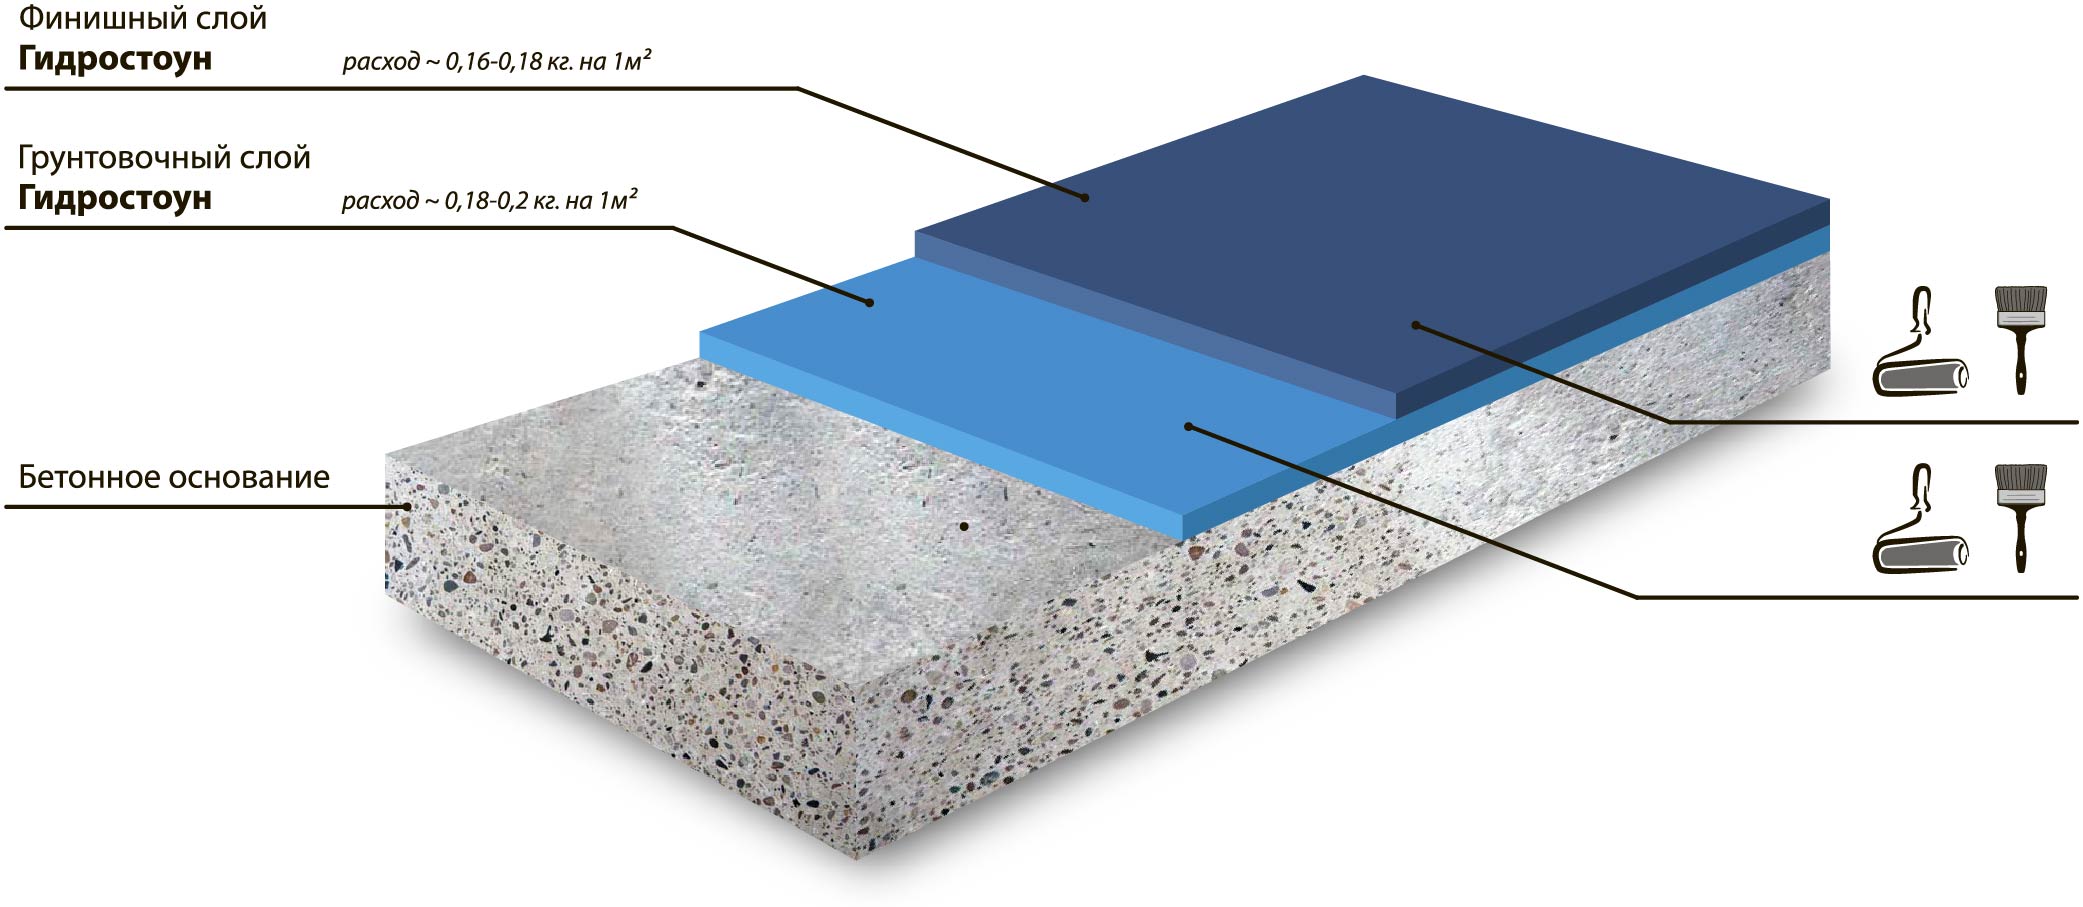 Быстрая система  решений для окраски стенок бетонных бассейнов